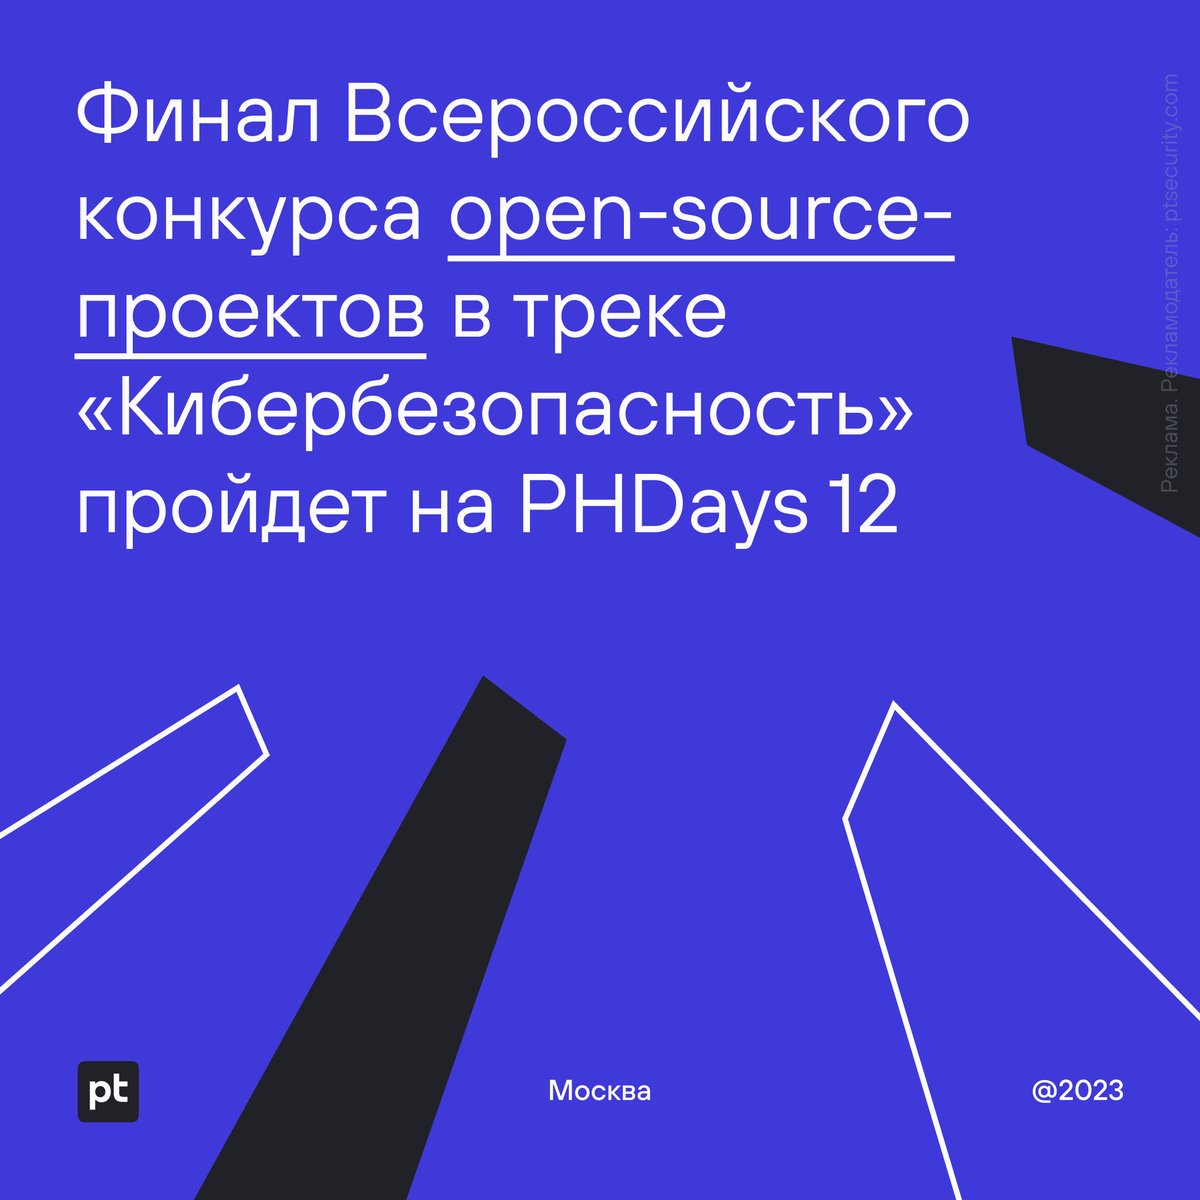 🧑‍💻 На фестивале Positive Hack Days 12 в мае пройдет финал Всероссийского конкурса open-source-проектов школьников и студентов (FOSS Kruzhok) по направлению «Кибербезопасность»: ptsecurity.com/ru-ru/about/ne…

#PHDays12